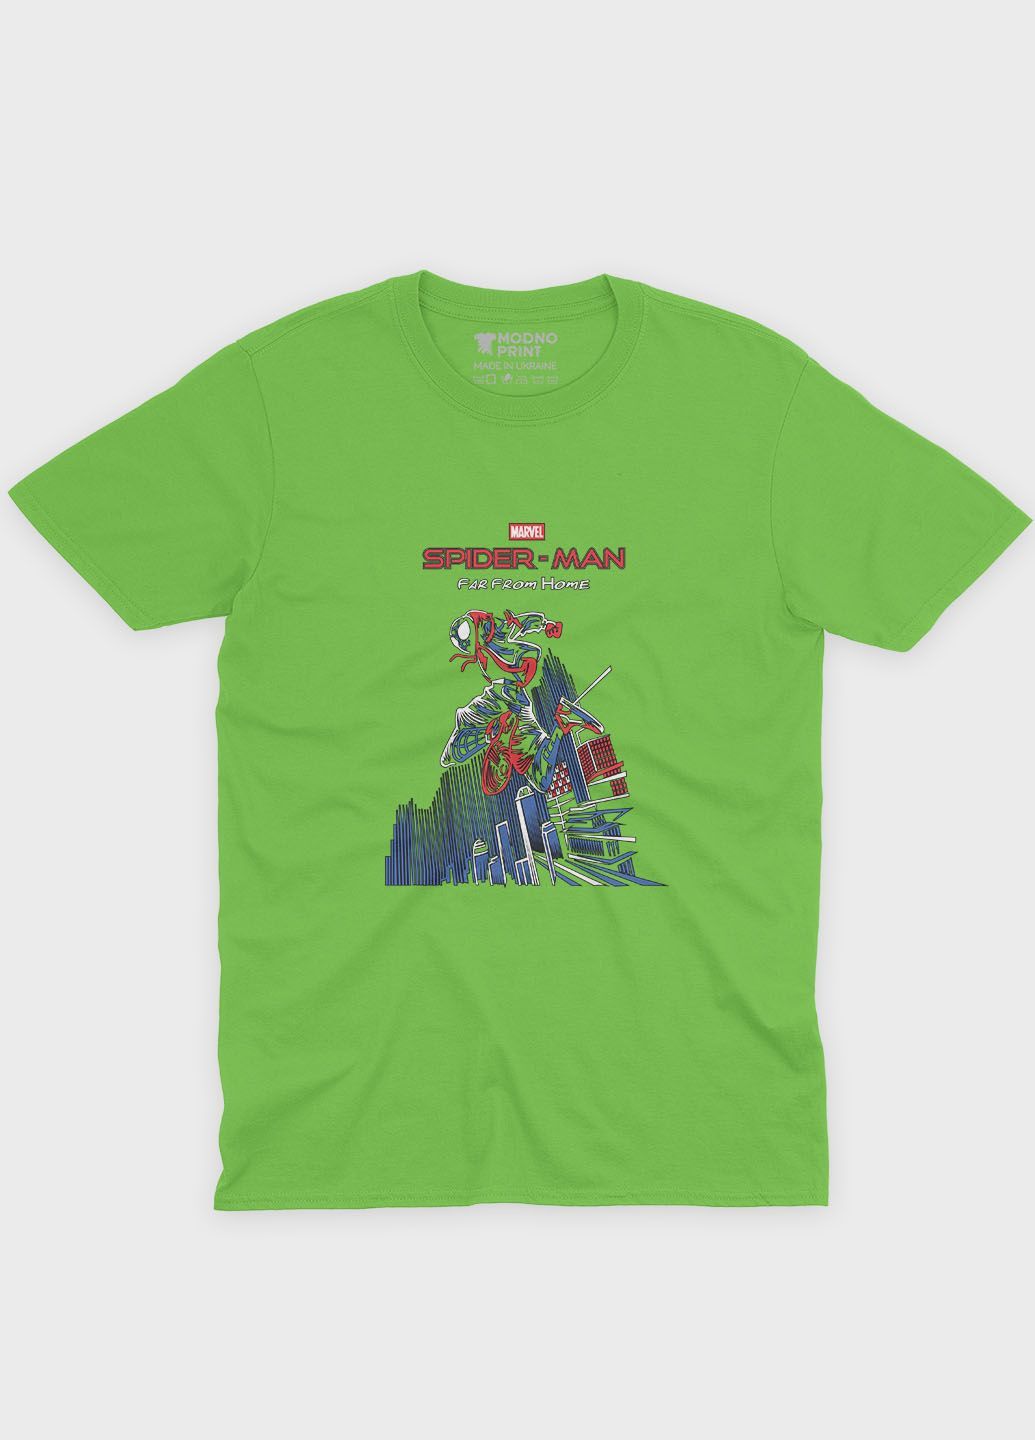 Салатовая демисезонная футболка для девочки с принтом супергероя - человек-паук (ts001-1-kiw-006-014-041-g) Modno